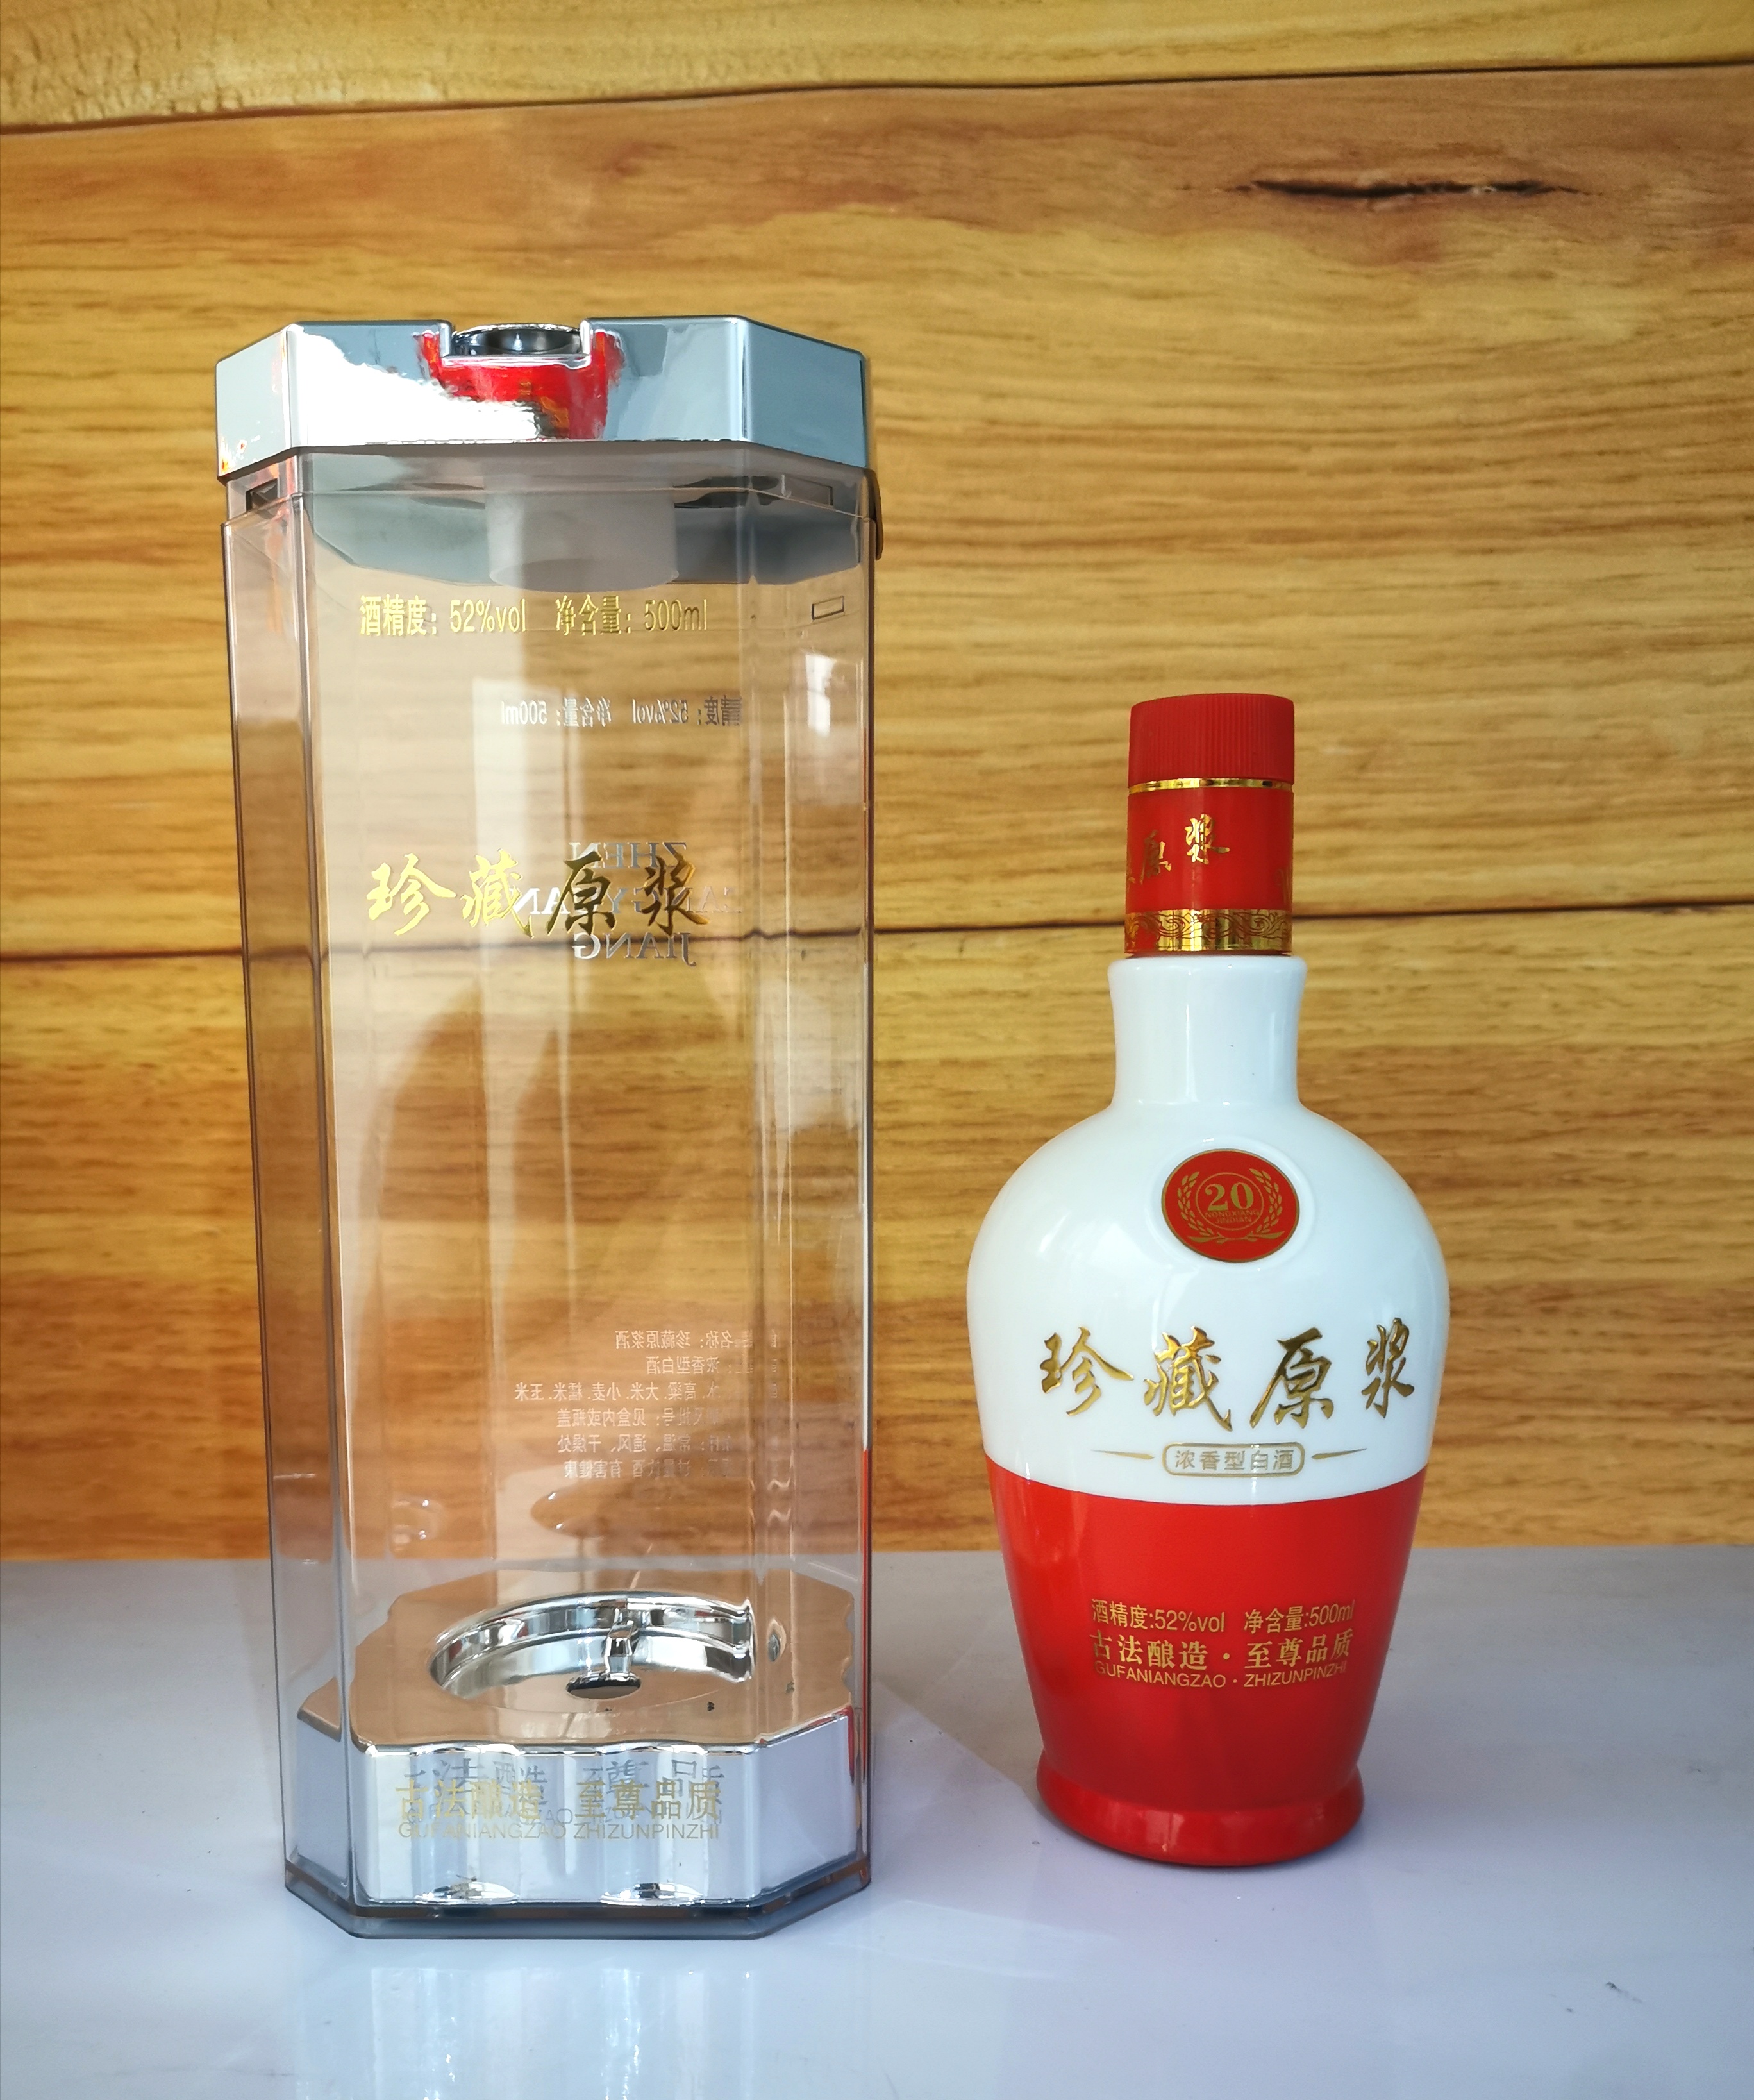 红色玻璃喜酒瓶包装 1斤装空瓶粮原浆 品鉴陶瓷瓶包装酒盒定制